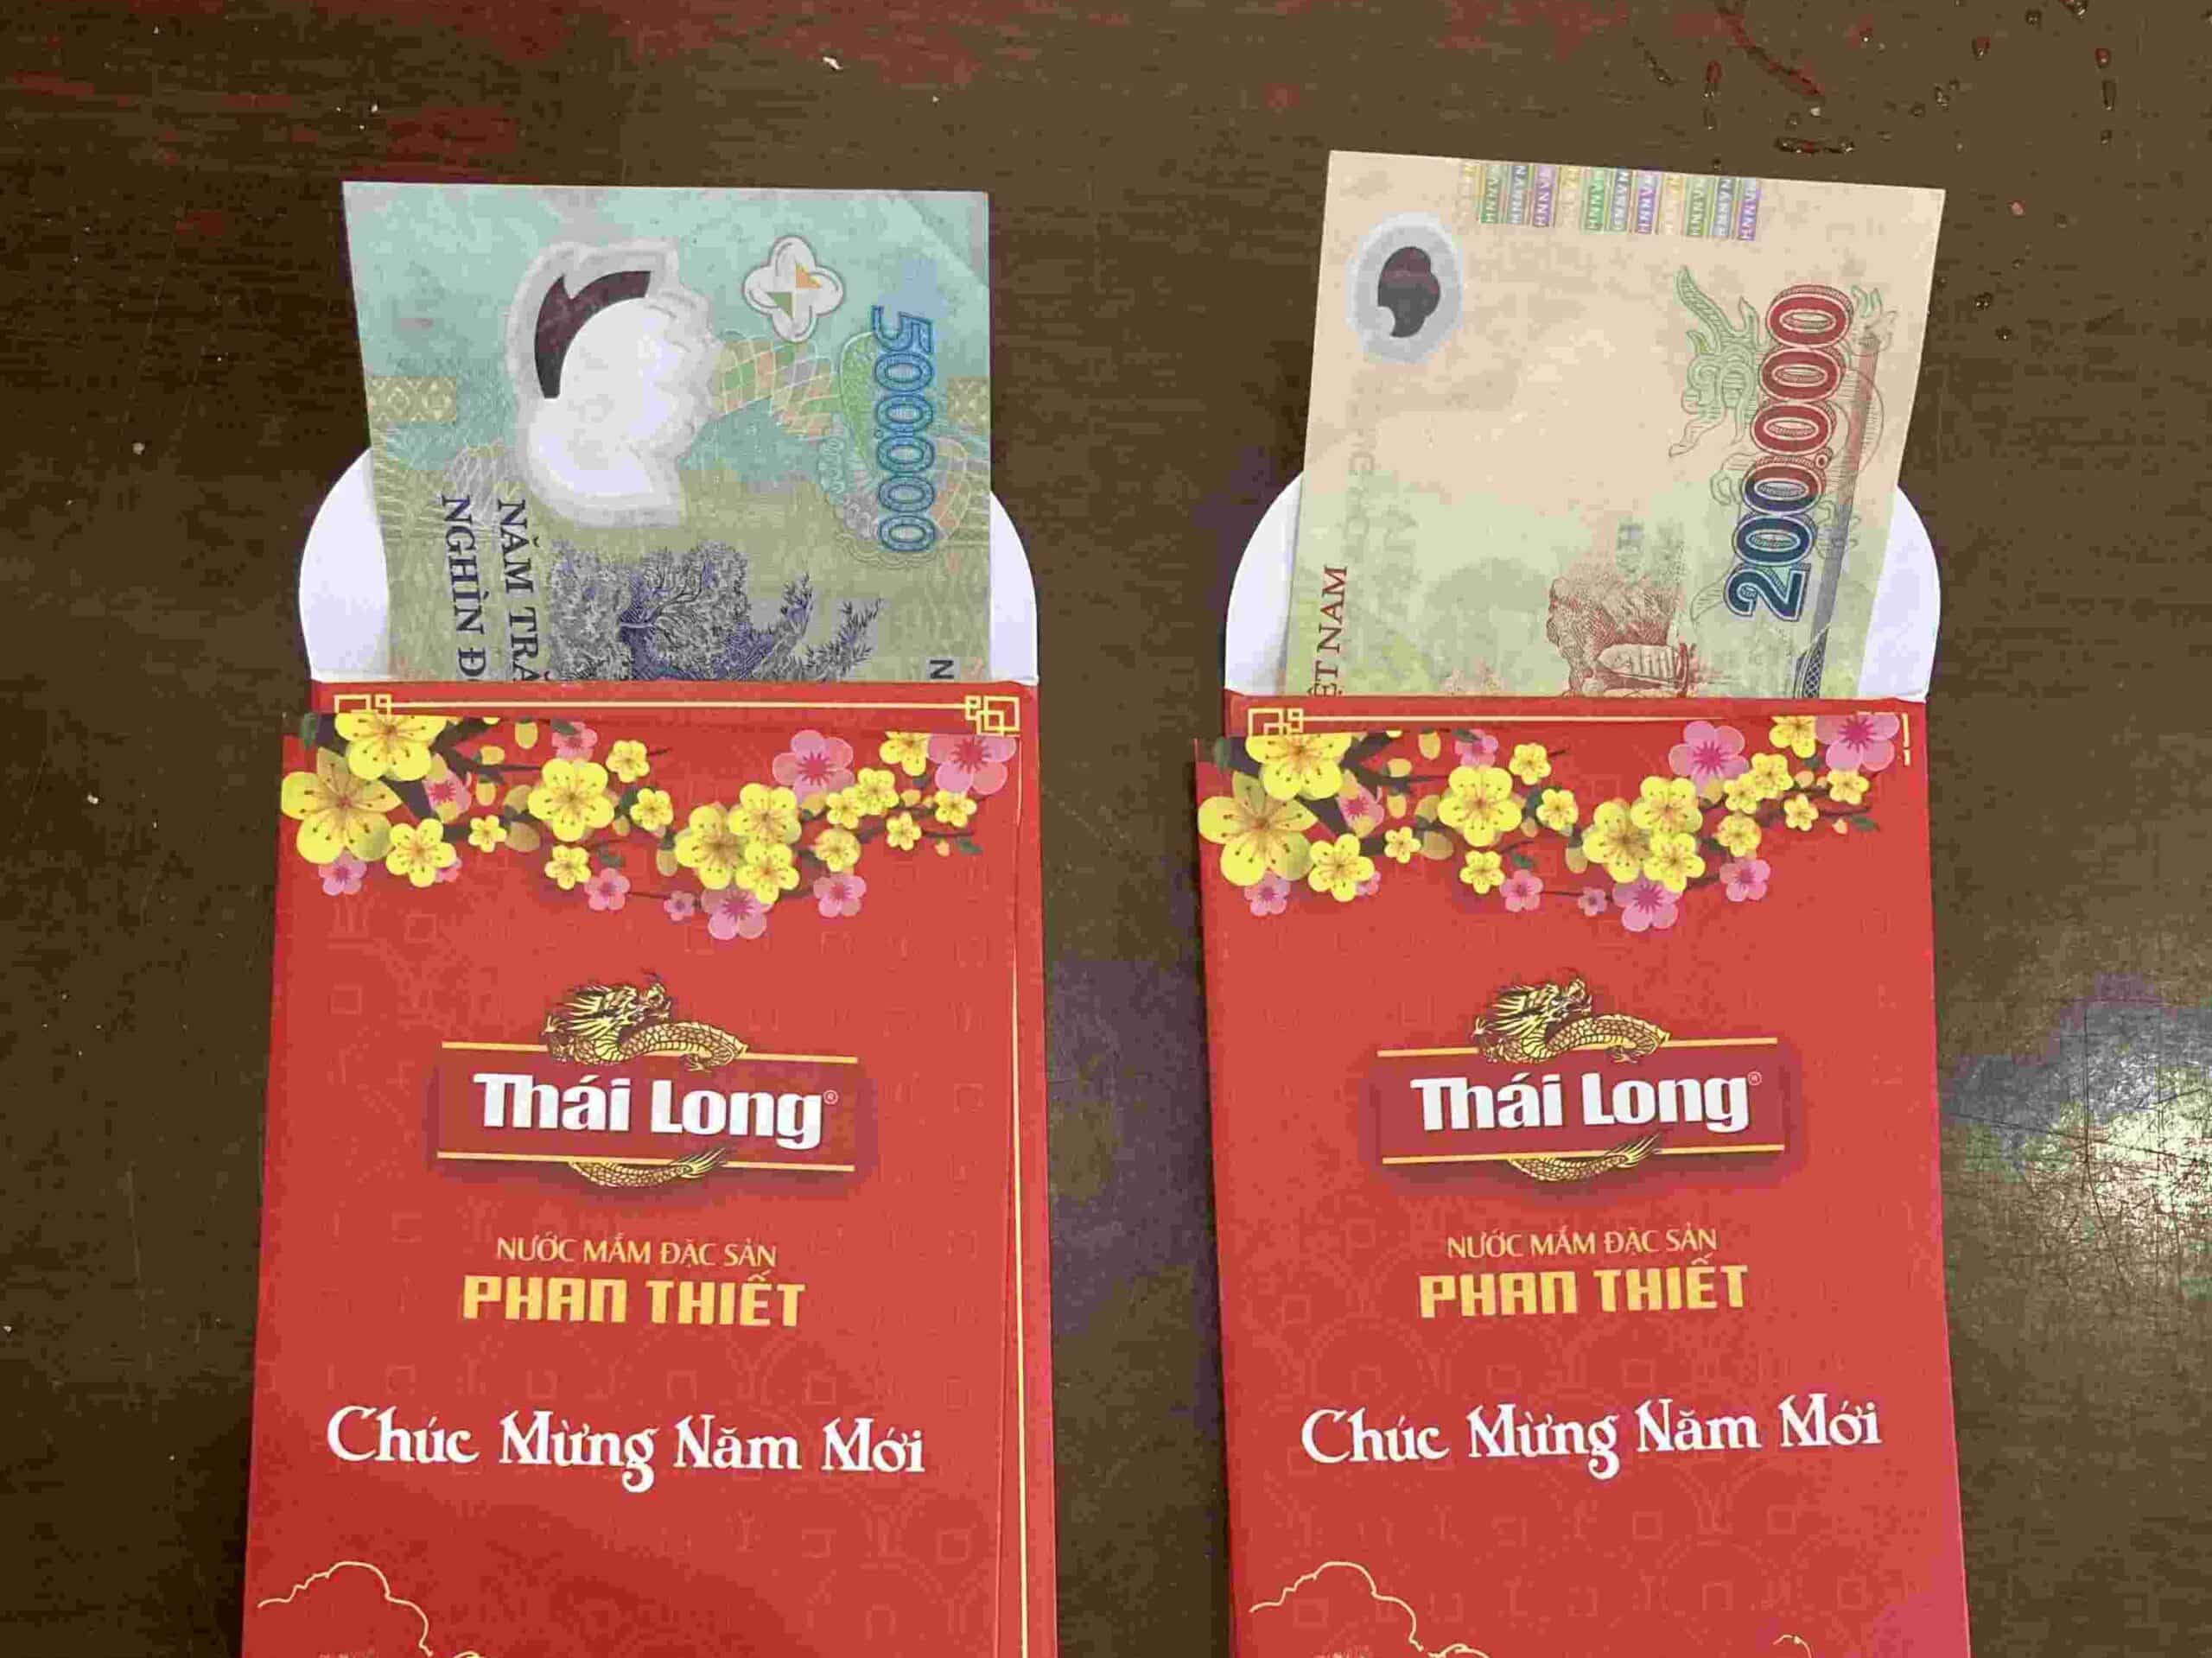 Li Xi lucky money at Tet Vietrnam